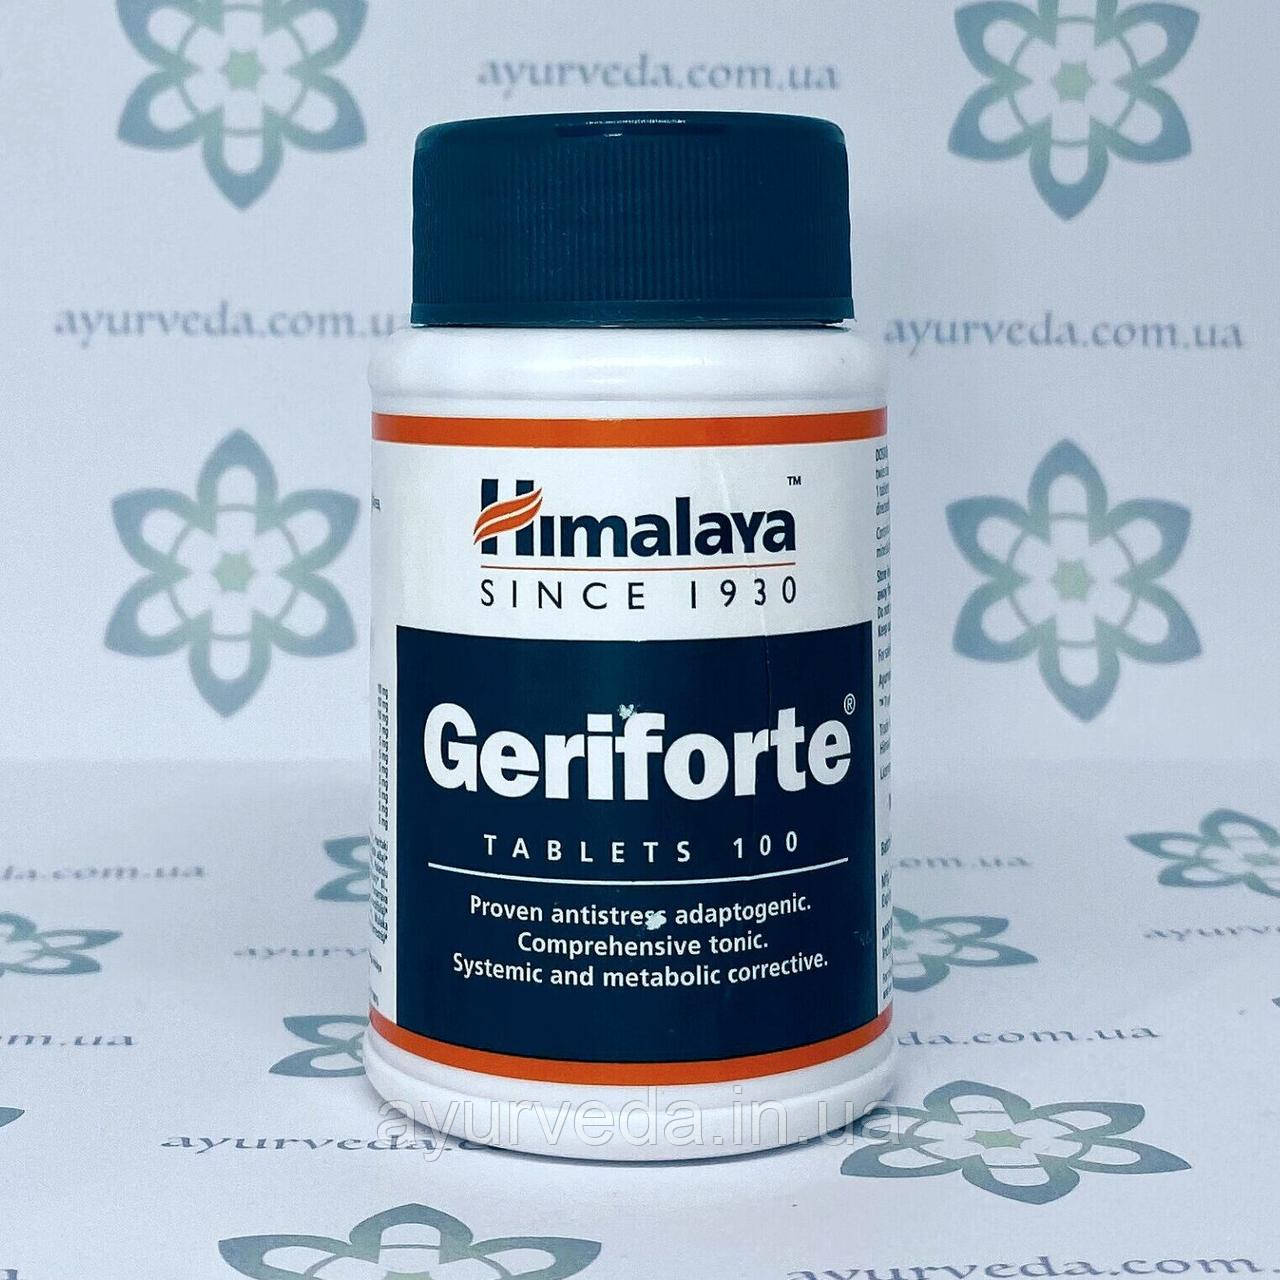 Geriforte Himalaya (Герифорте) 100 таб. зміцнює імунітет, обмін речовин, омолоджує, виводить шлаки токсини